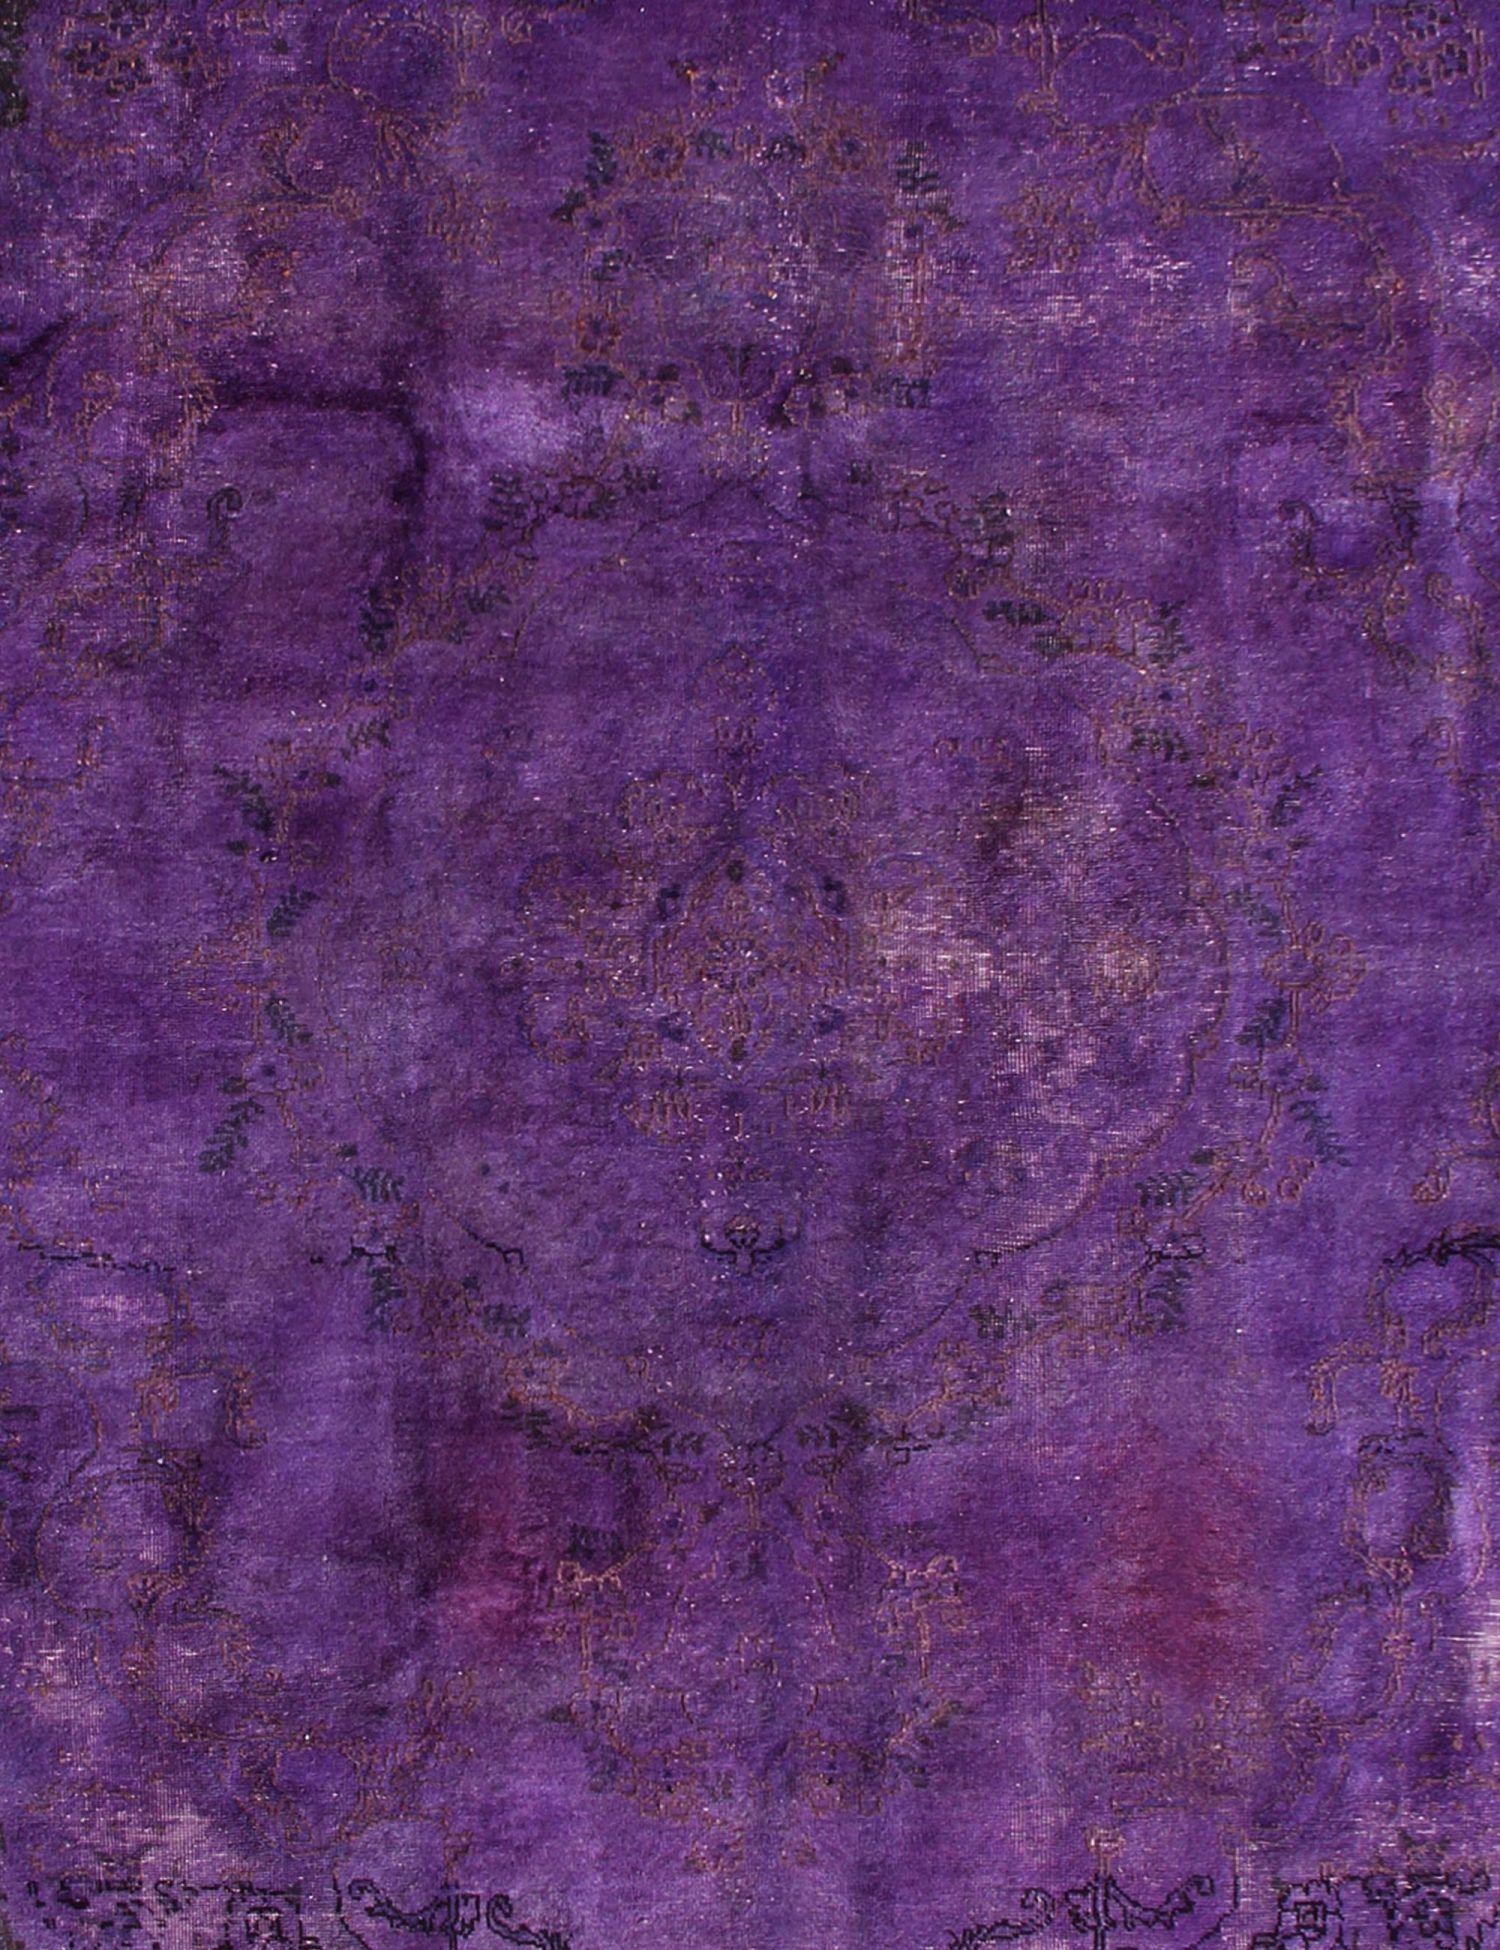 Persischer Vintage Teppich  lila <br/>390 x 280 cm